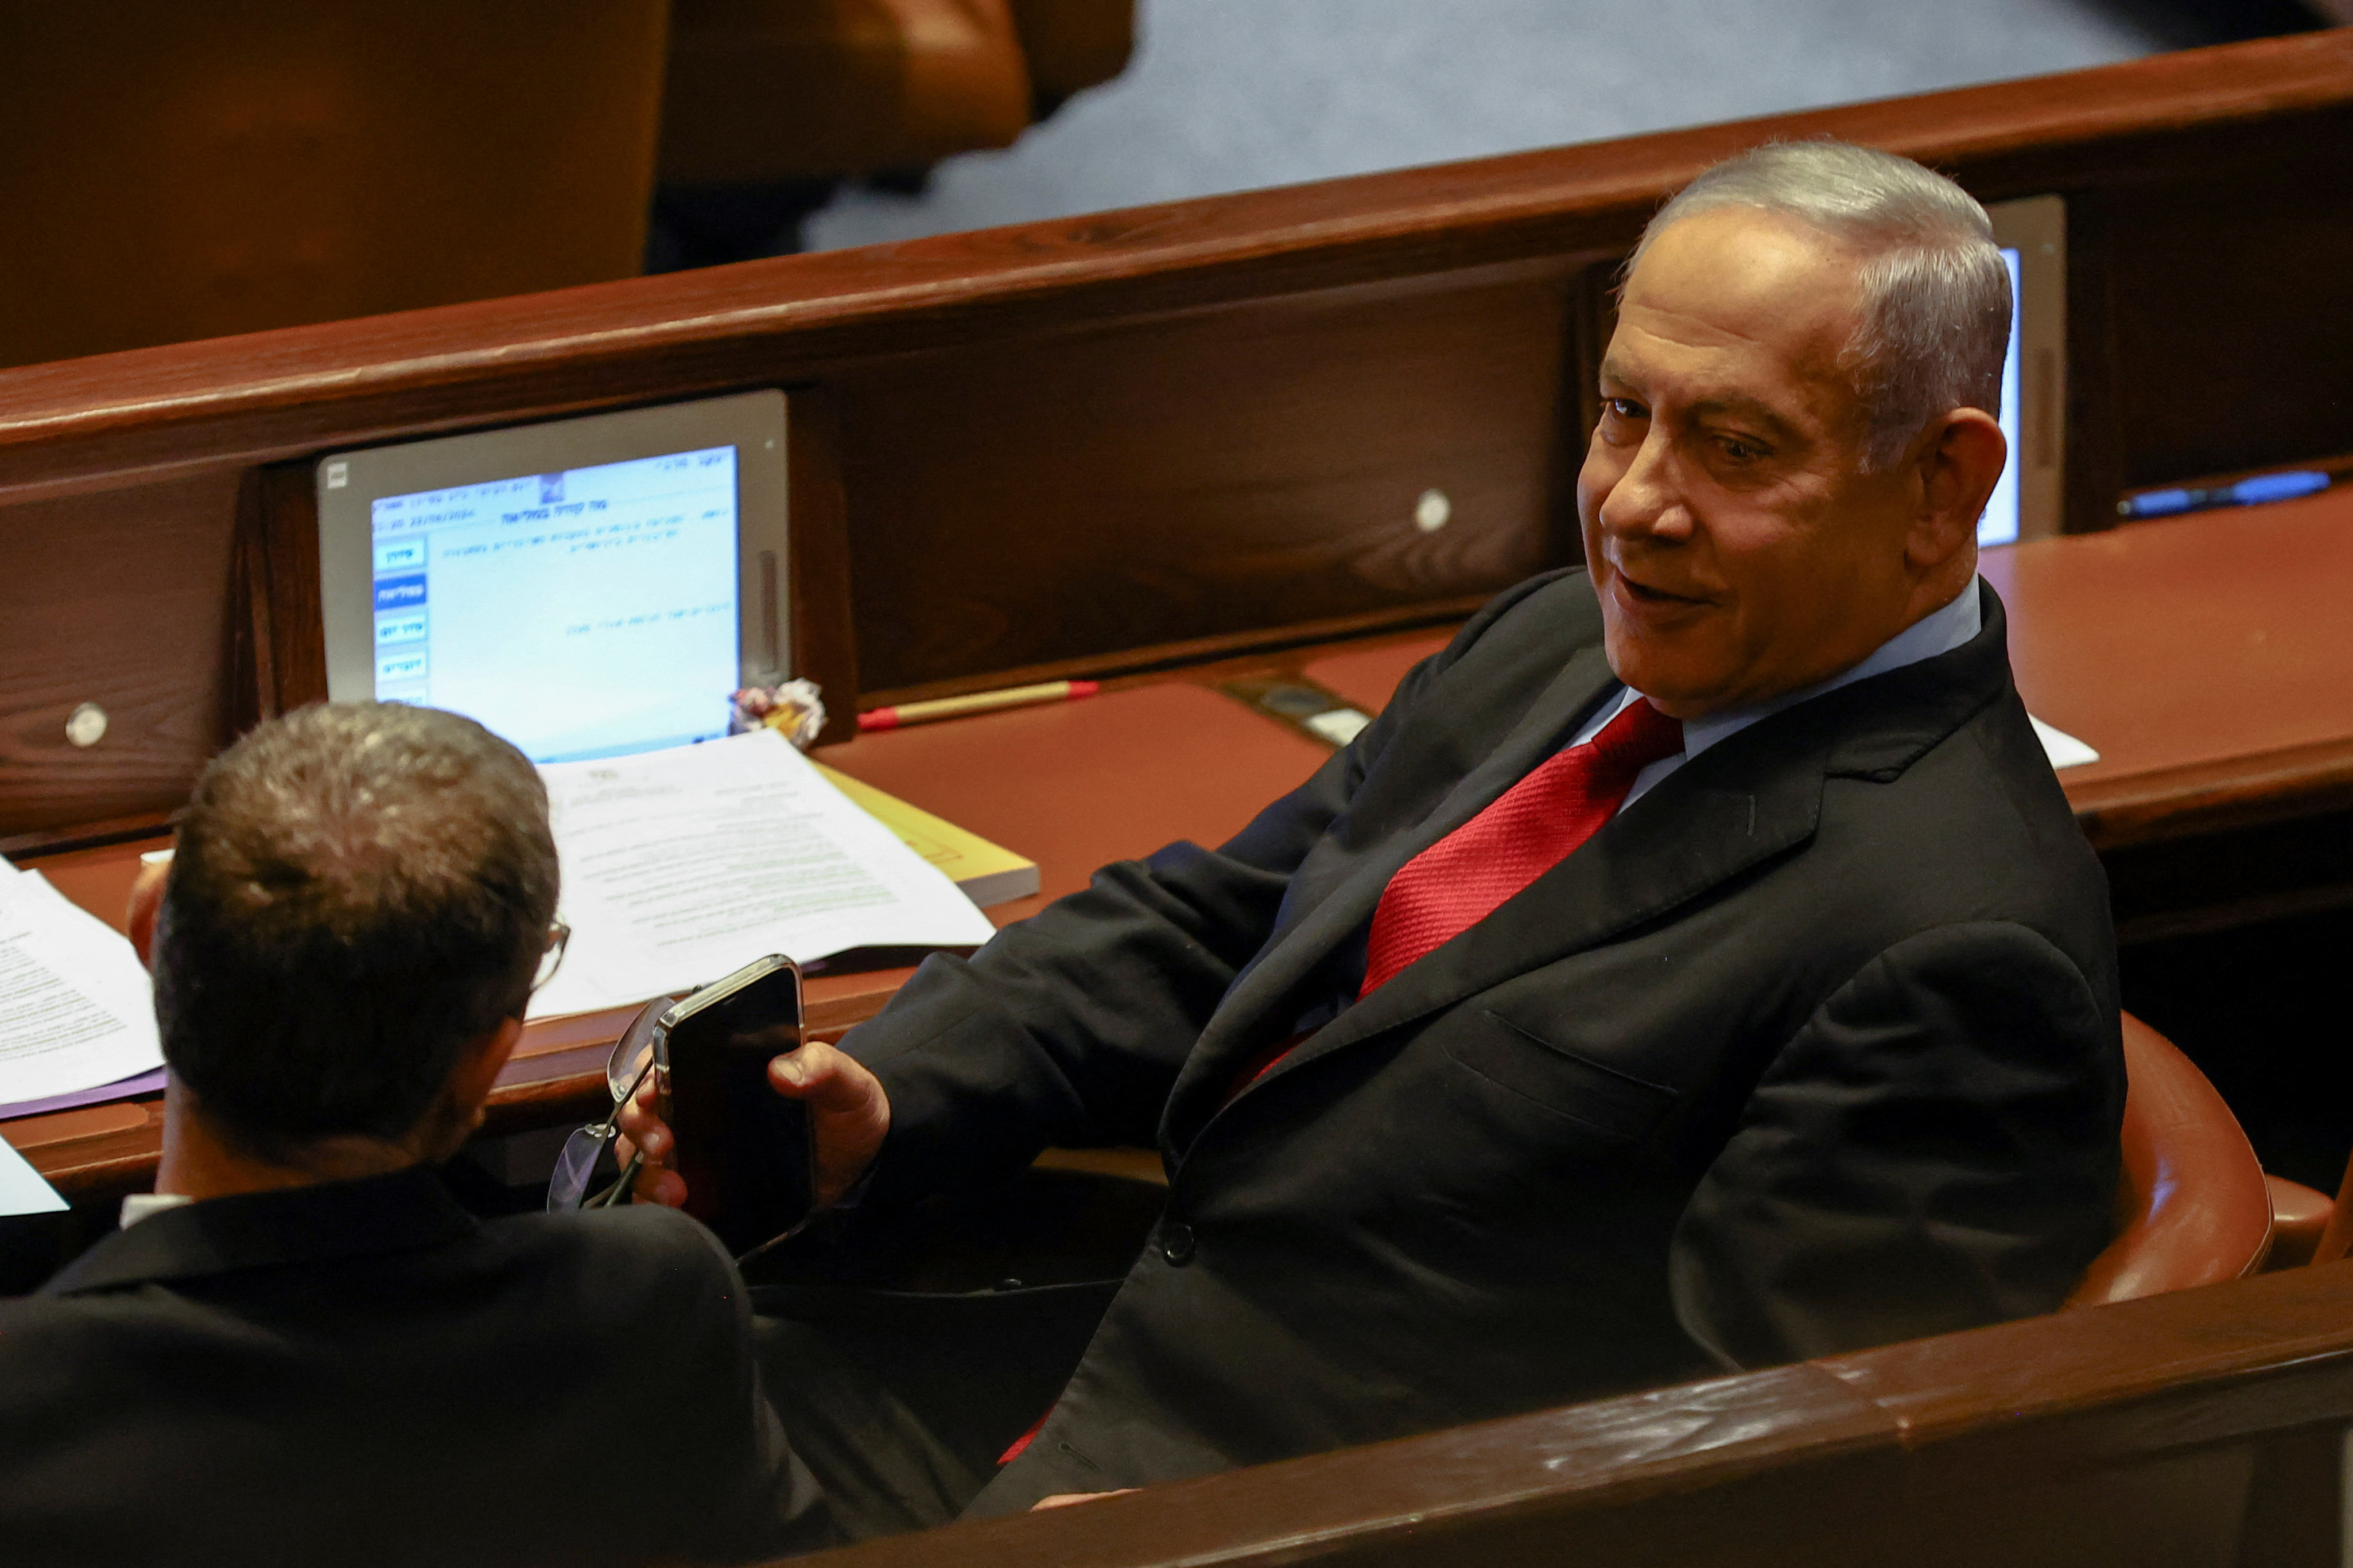 El ex primer ministro israelí Benjamín Netanyahu asiste a una lectura preliminar en el parlamento israelí, la Knesset, de un proyecto de ley para disolver el parlamento después de que el primer ministro Naftali Bennett y el ministro de Asuntos Exteriores Yair Lapid se movieran para disolver su gobierno y celebrar unas elecciones anticipadas, en Jerusalén, 22 de junio de 2022. REUTERS/Ronen Zvulun